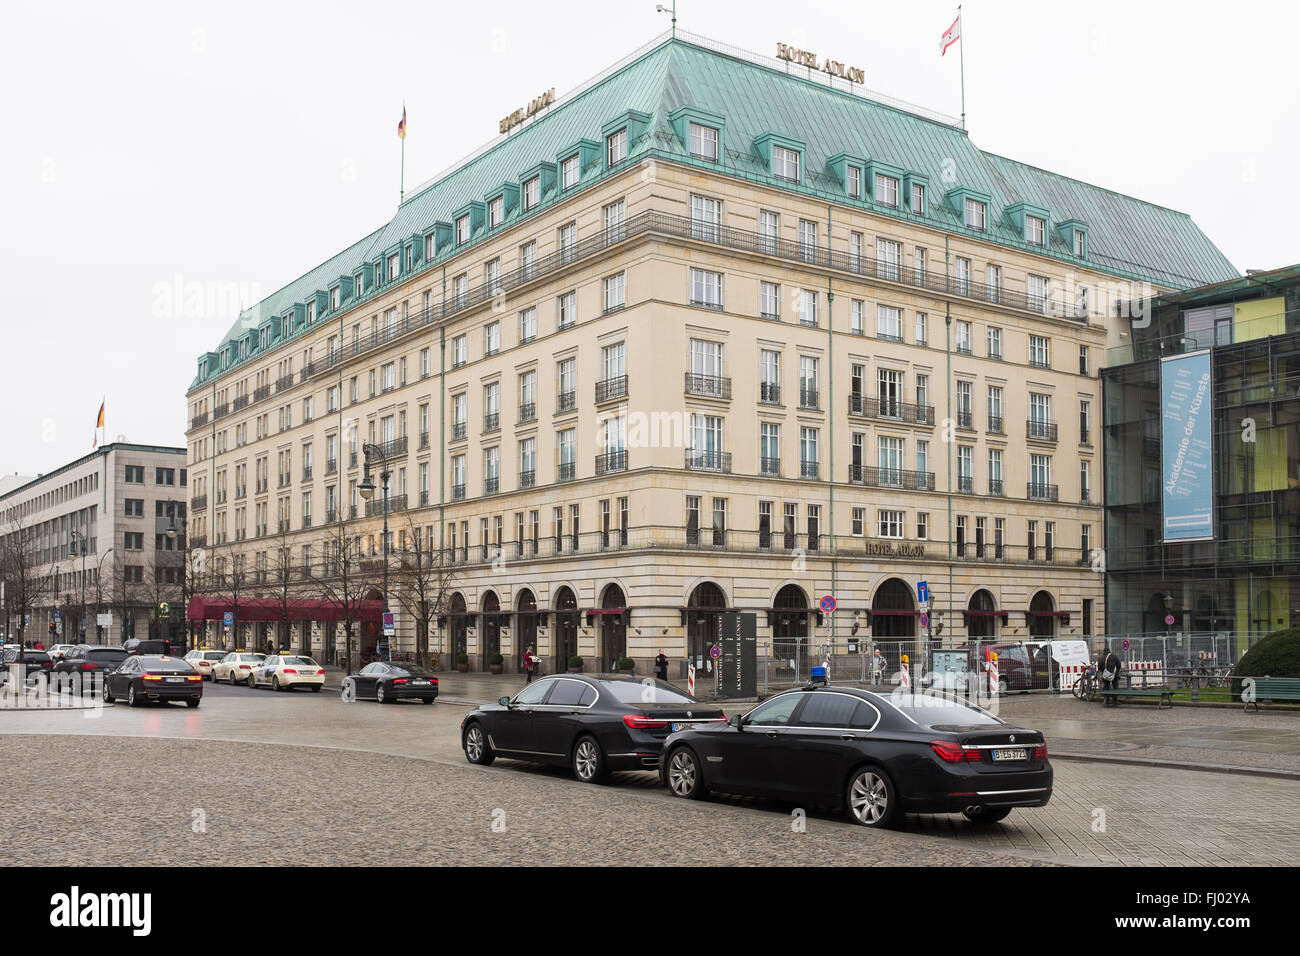 Adlon Hotel Berlin Stockfotos und -bilder Kaufen - Alamy